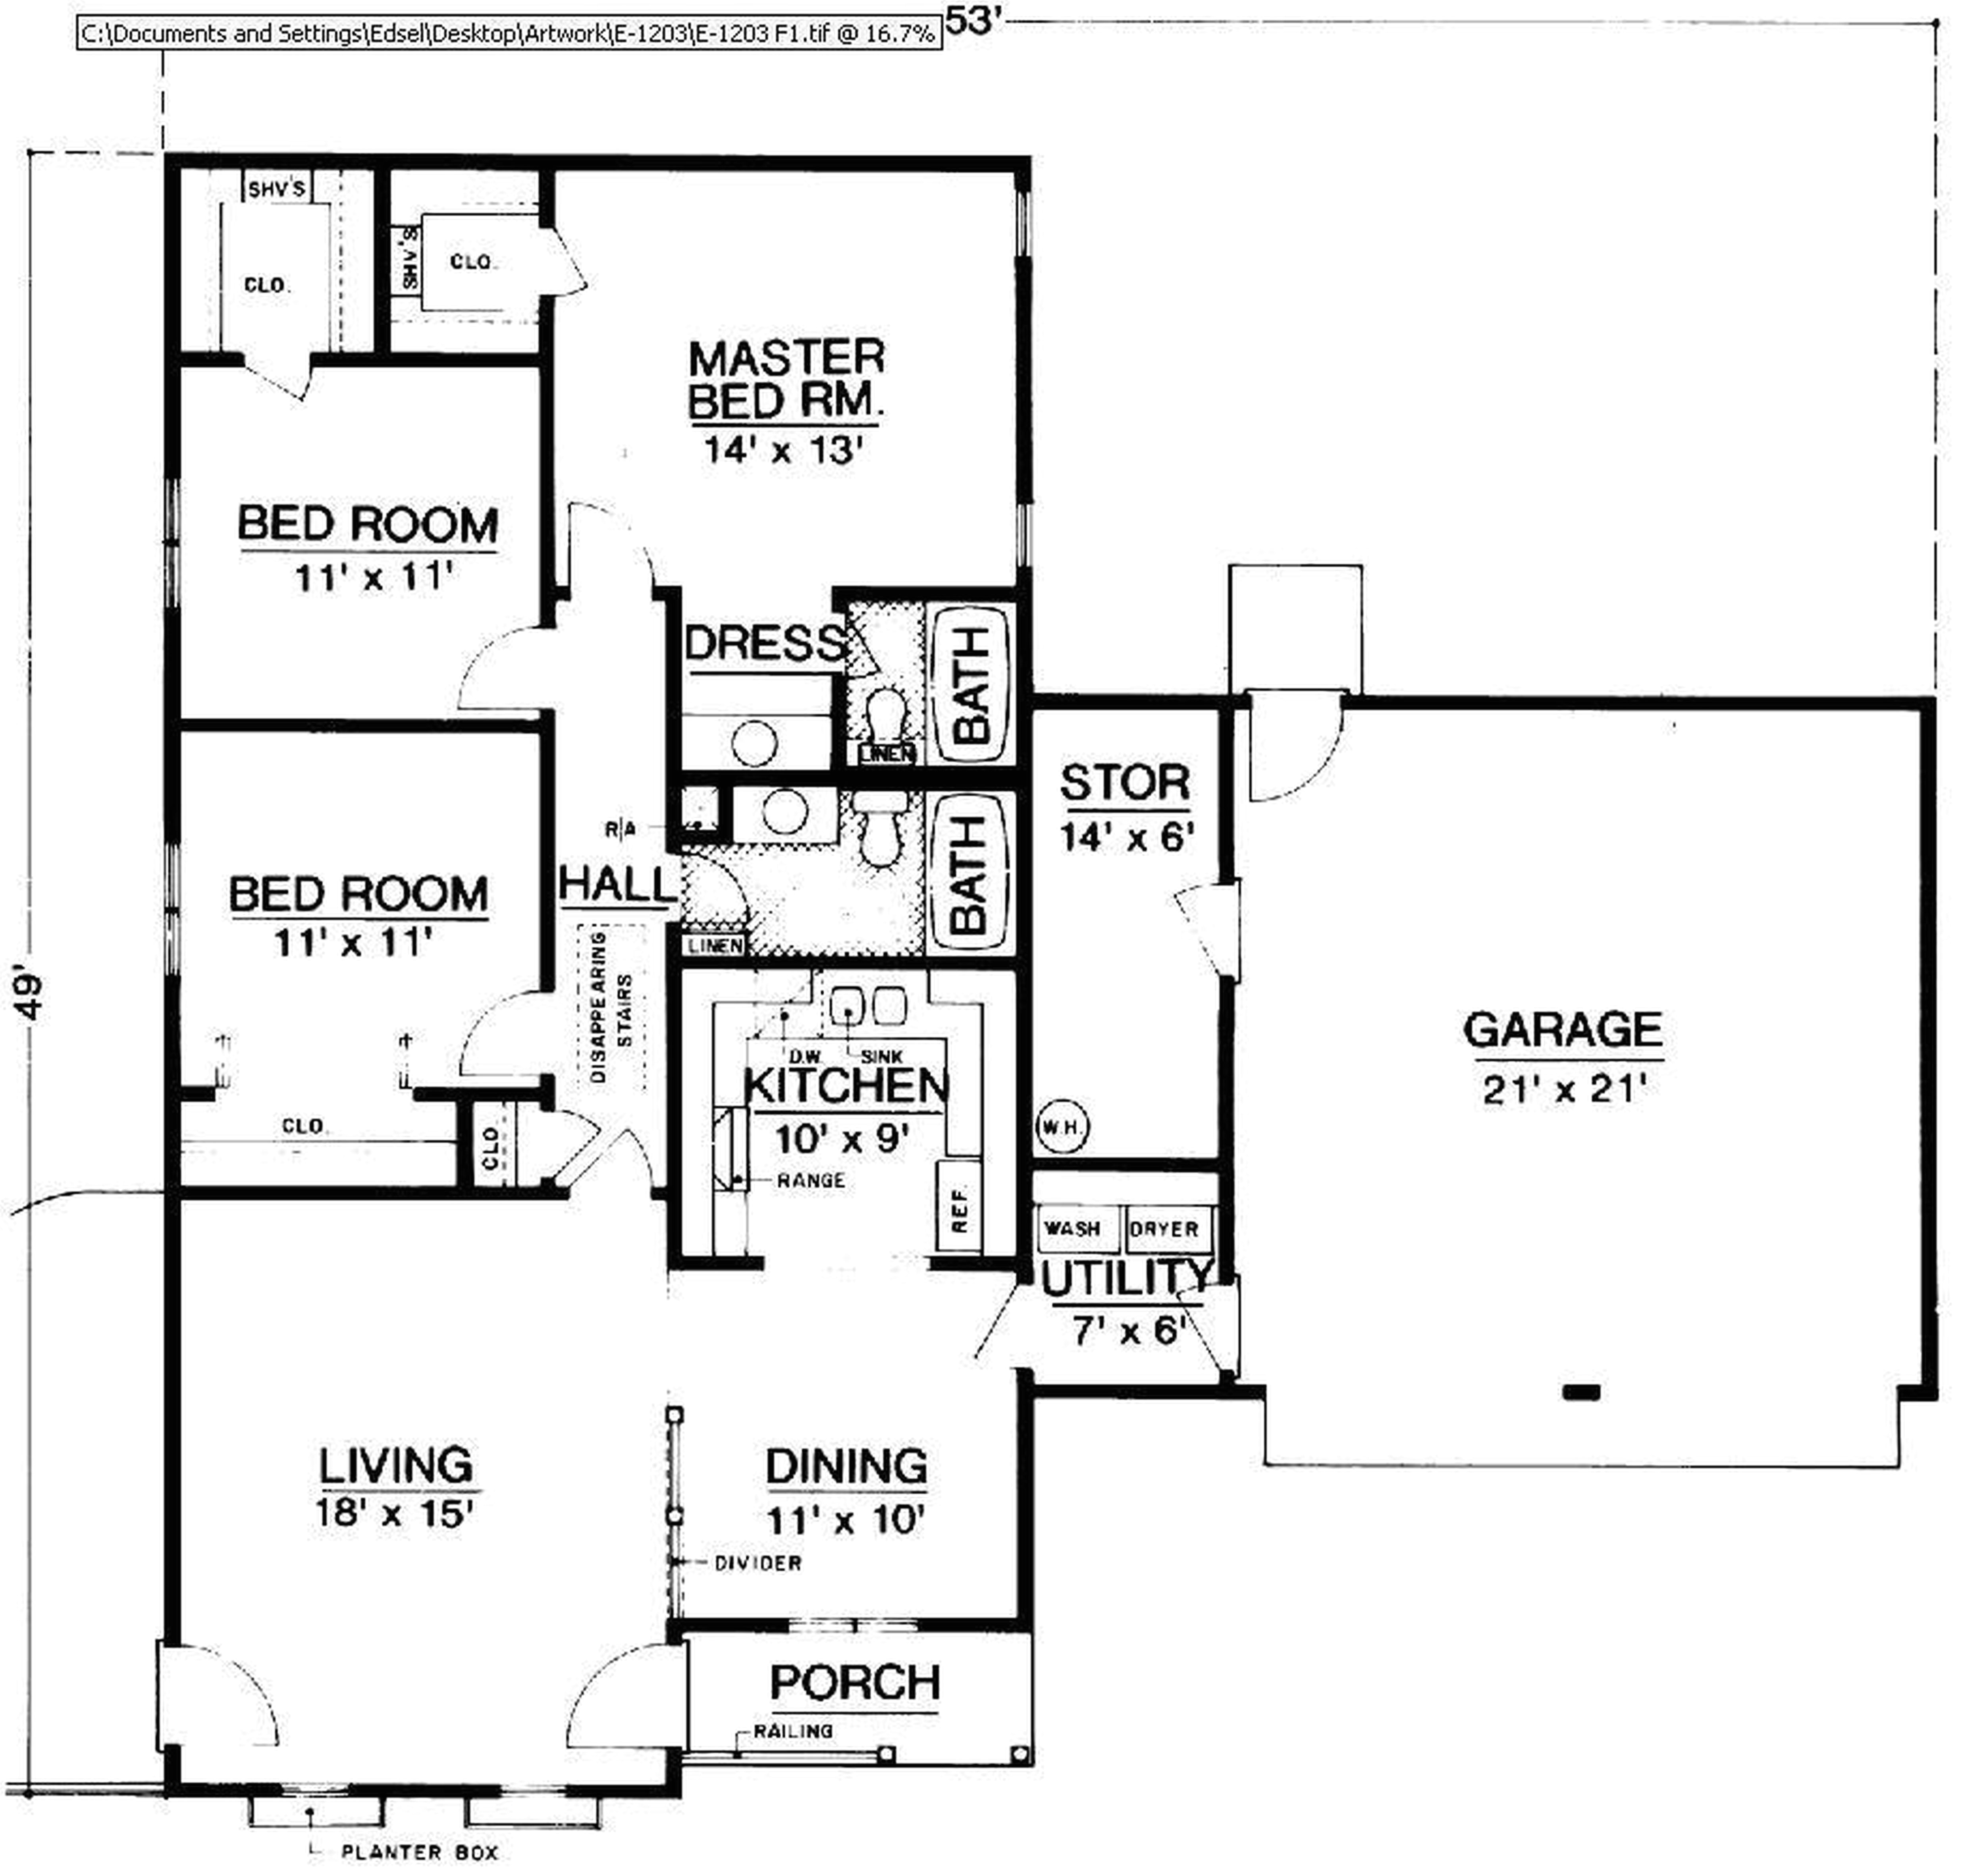 cvs floor plan beautiful carolina home plans how to design a house floor plan beautiful house